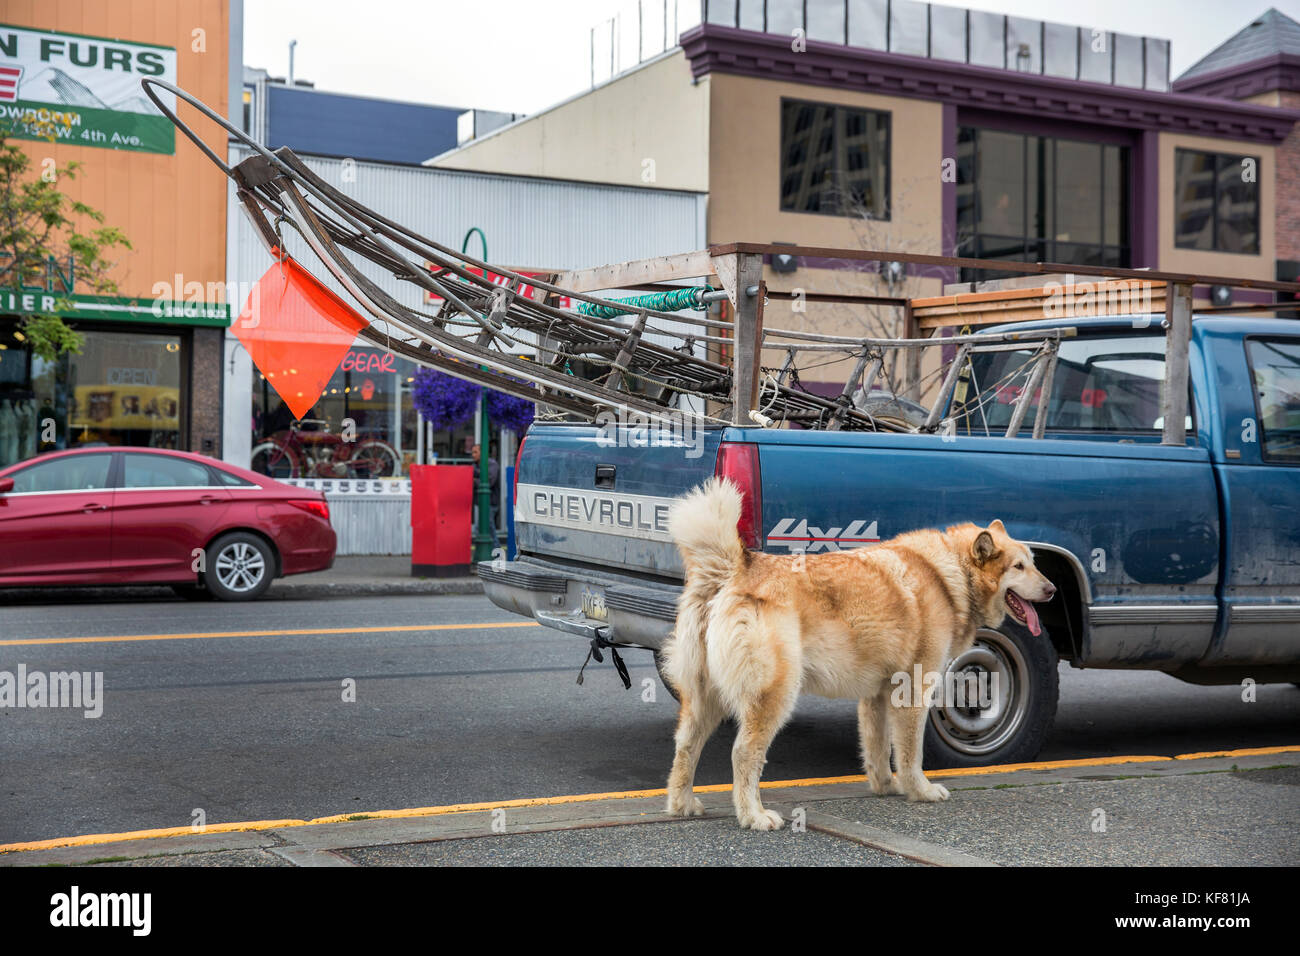 Stati Uniti d'America, Alaska, Anchorage, iditarod musher, asta Perry, disputato il primo iditarod, l'Iditarod è uno dei mondi più grandi sled dog gare Foto Stock